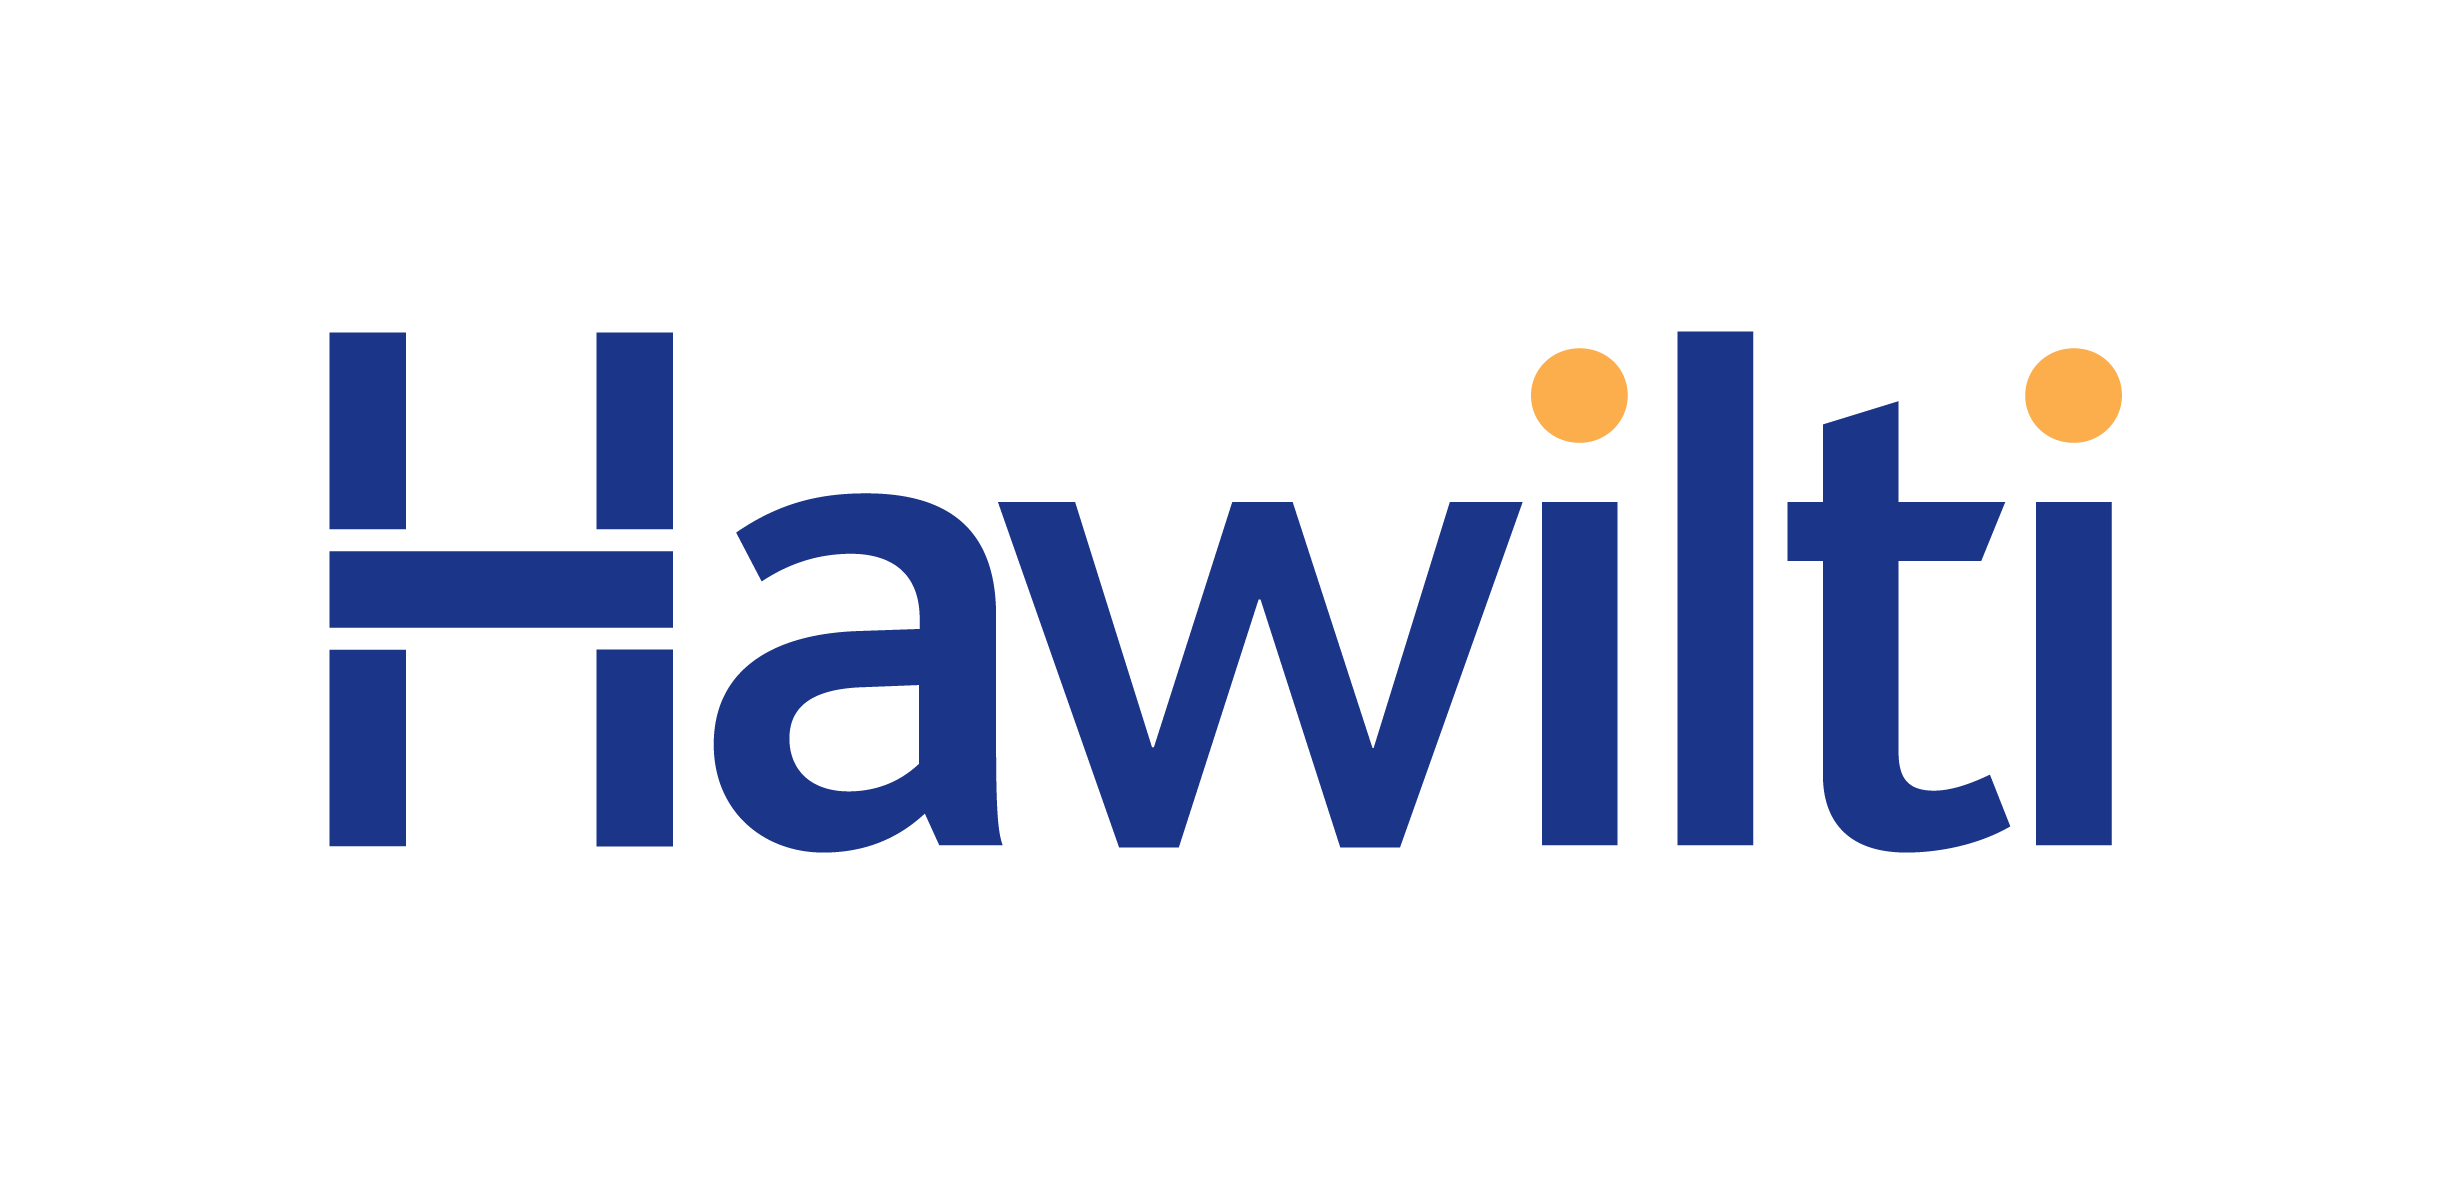 21113 Hawilti Logo